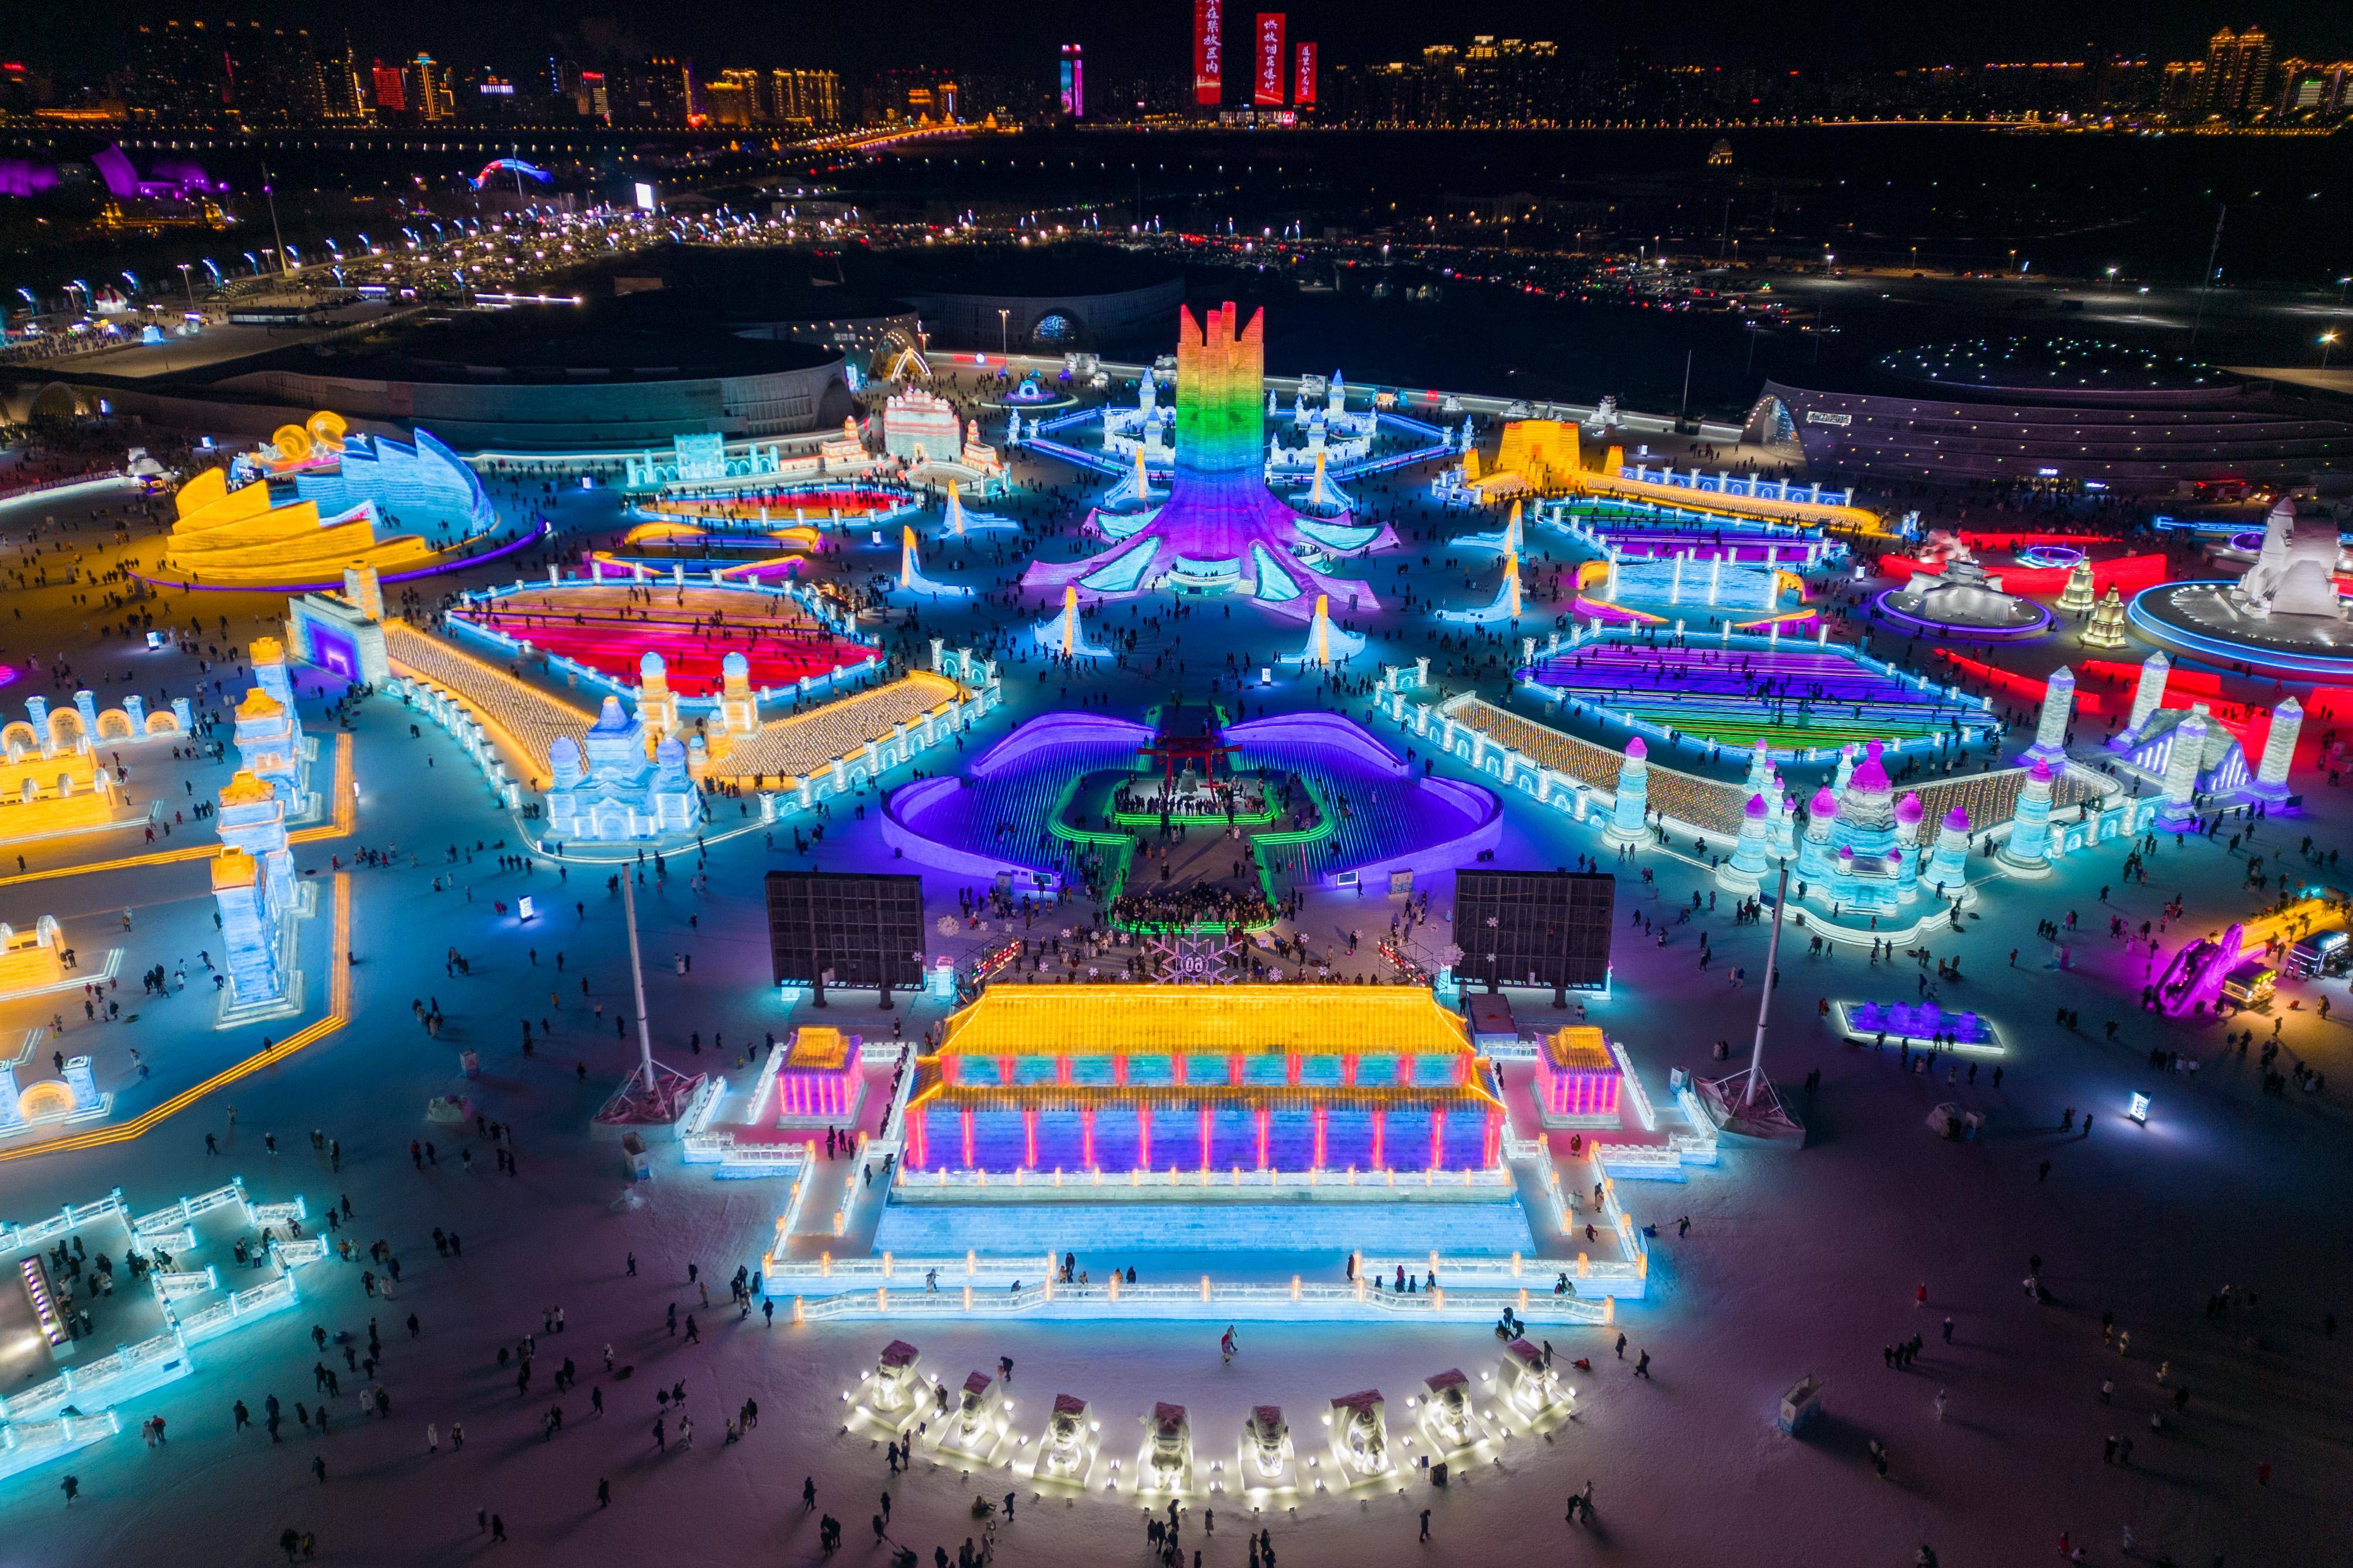 1月24日,游客在哈尔滨冰雪大世界园区游玩